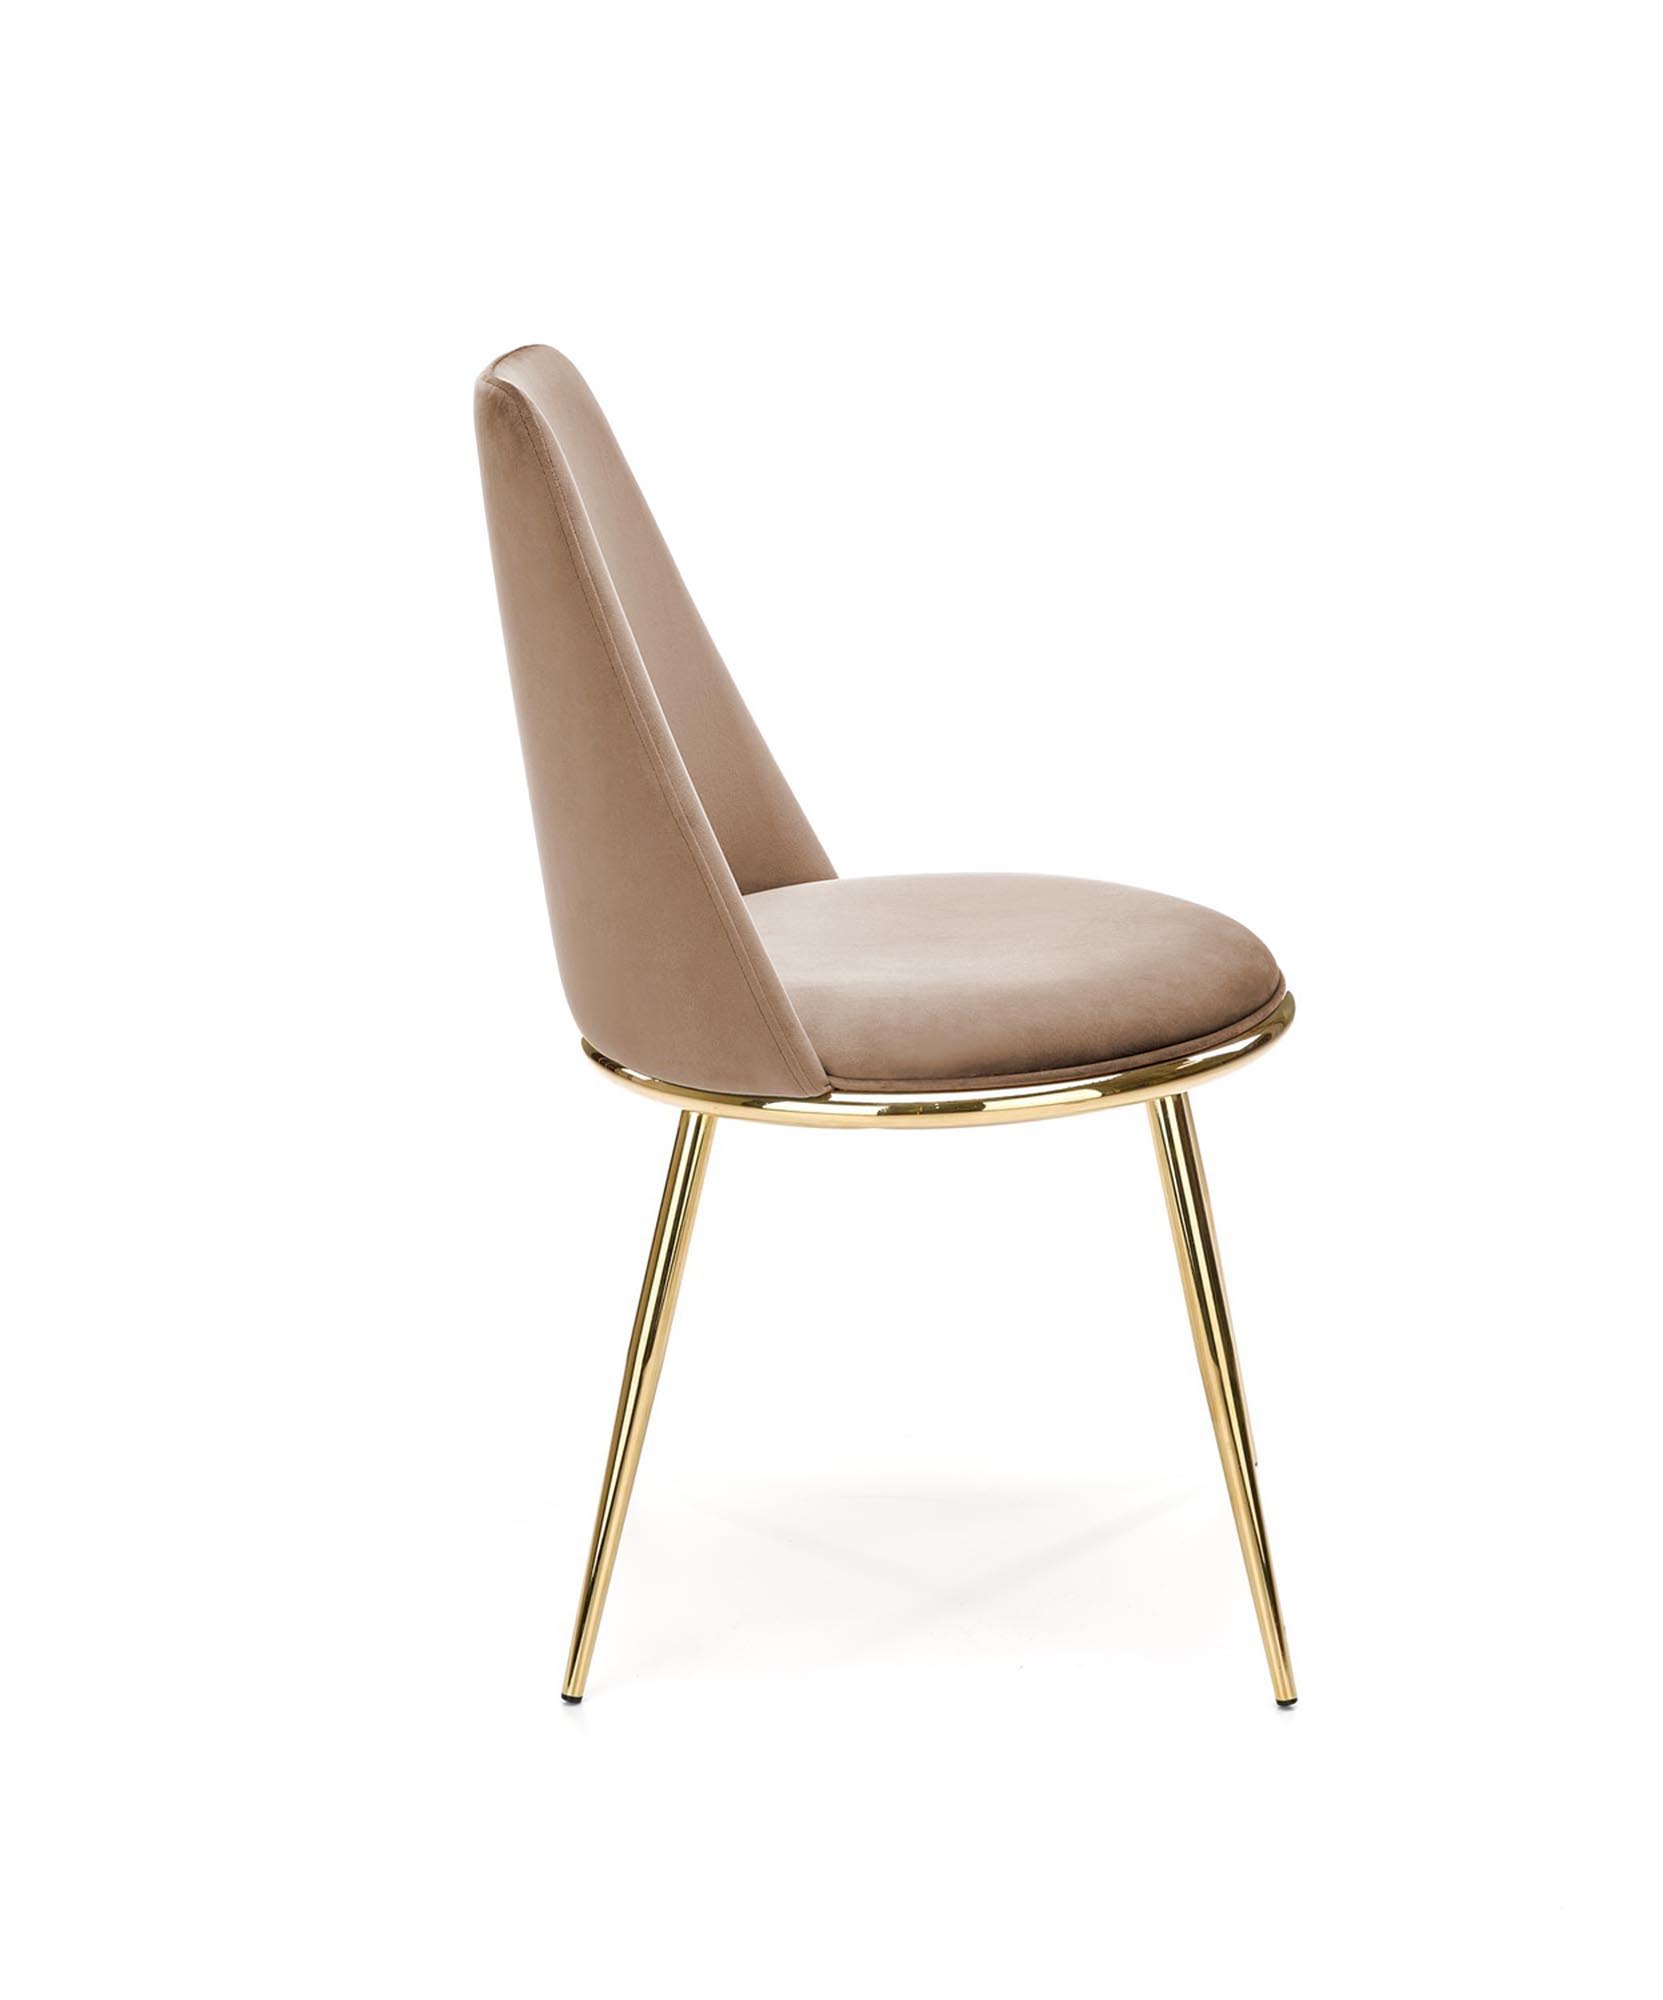 Krzesło tapicerowane K460 - beżowy / złoty krzesło tapicerowane k460 - beżowy / złoty